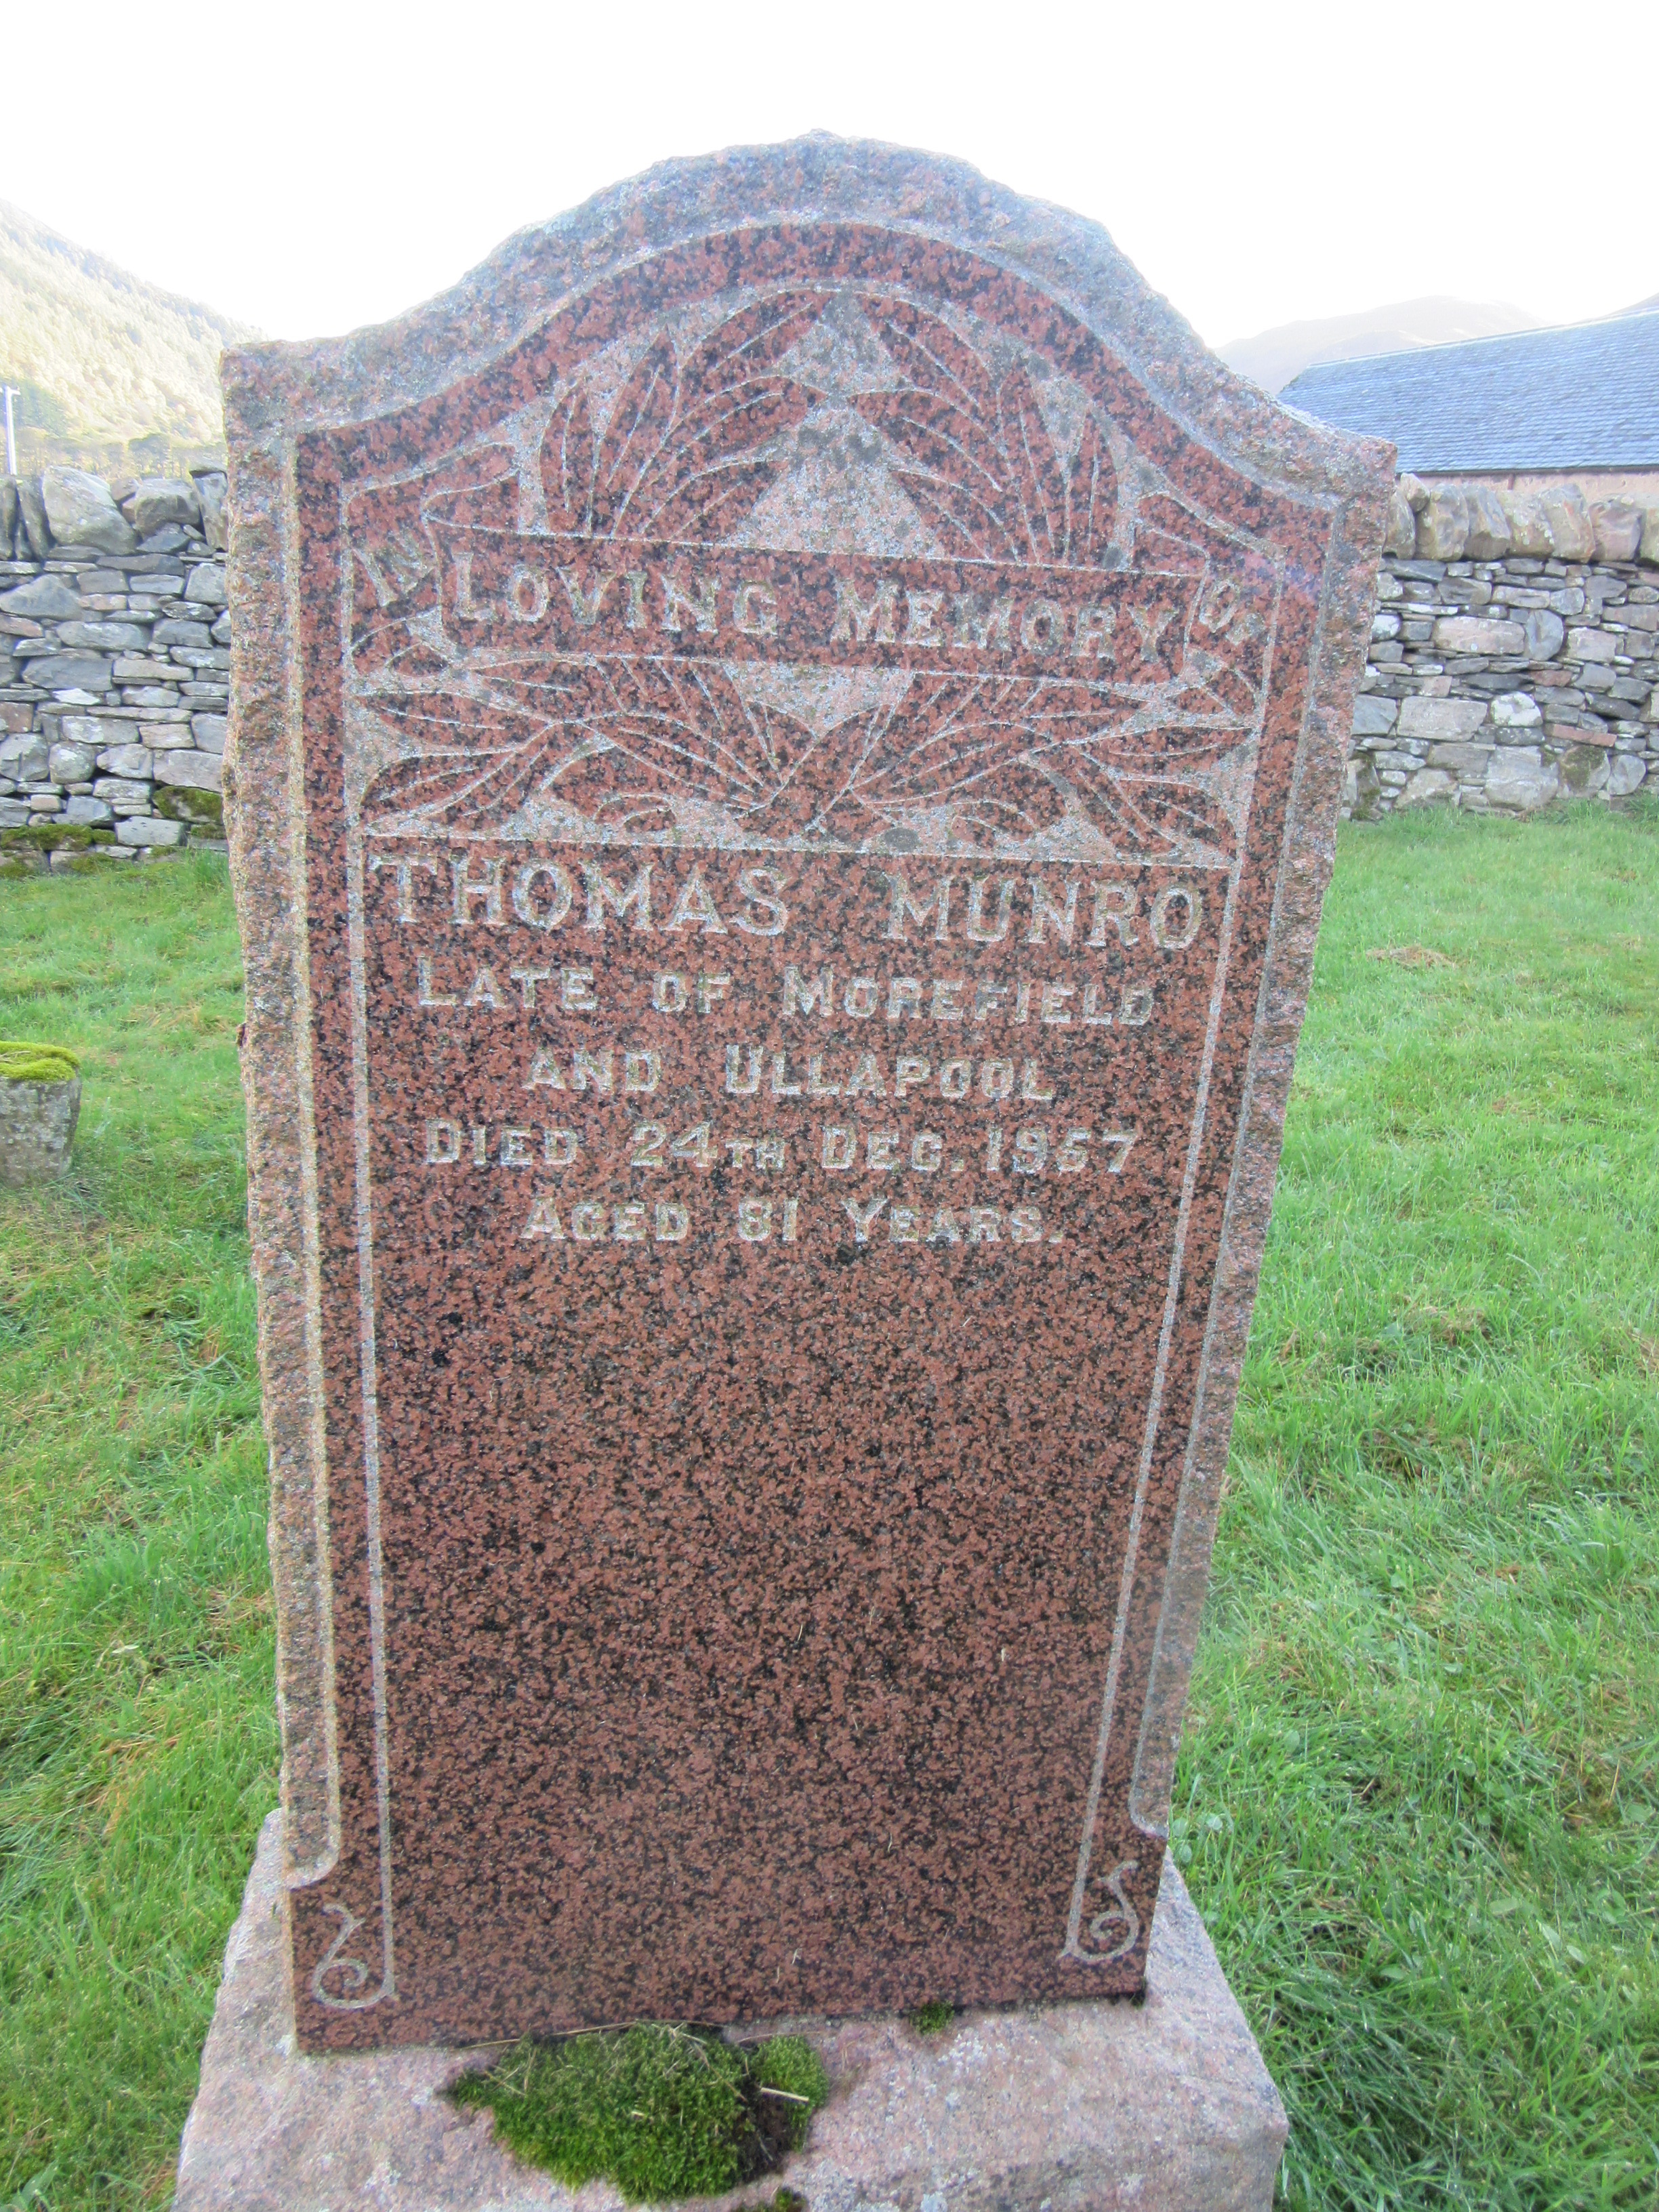 167 -  Thomas Munro,